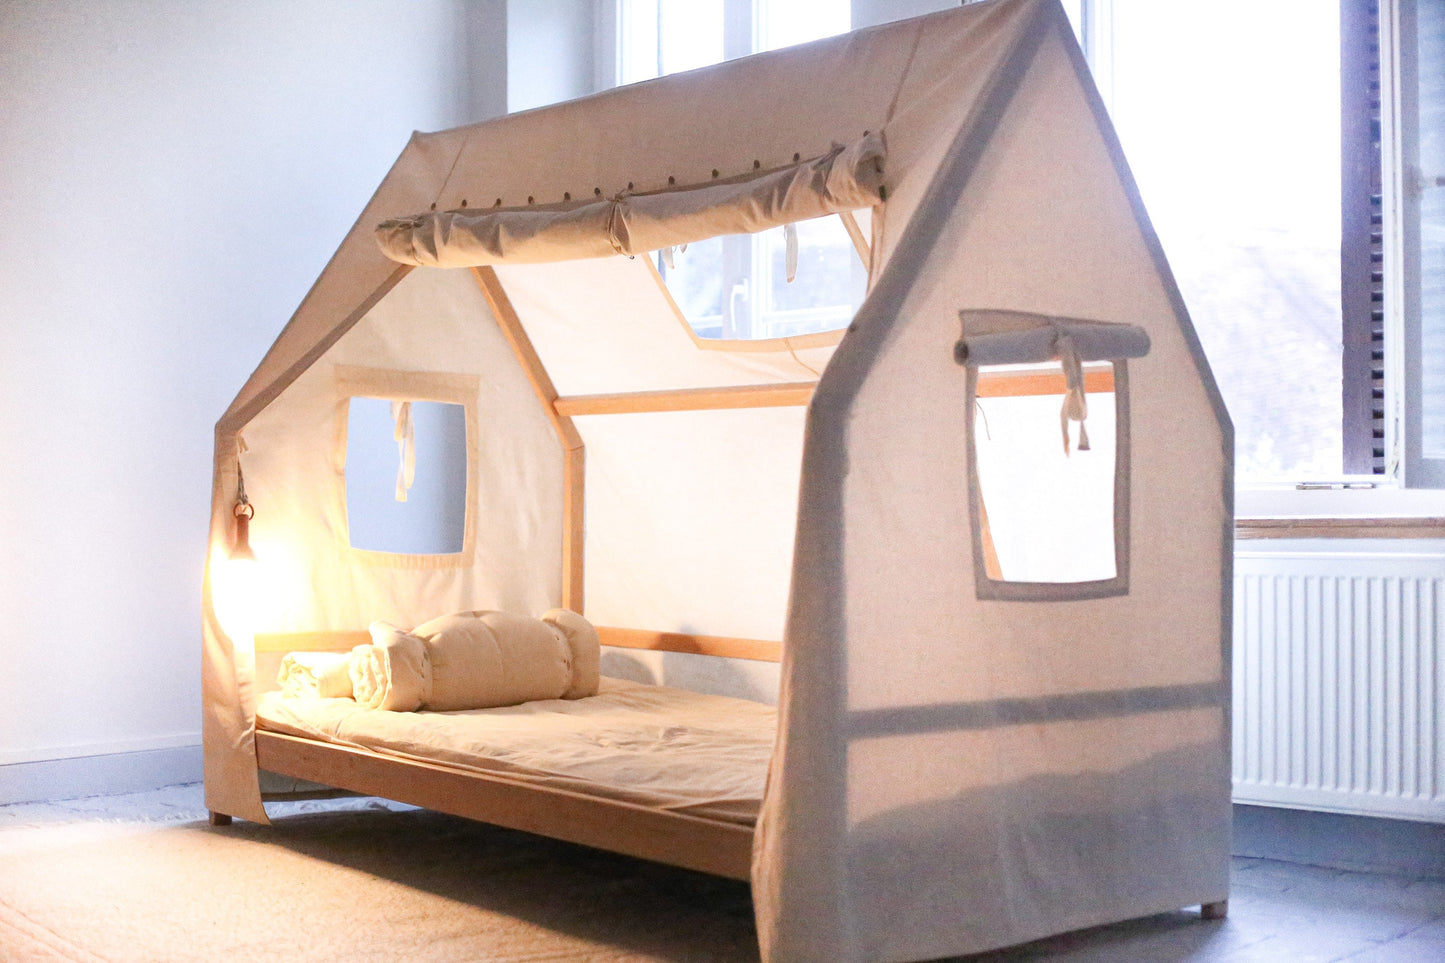 Montessori Floor Bed |Alder Tree Toddler Bed Frame | Cute Bedroom Furniture | Gift For Kids Room Decor